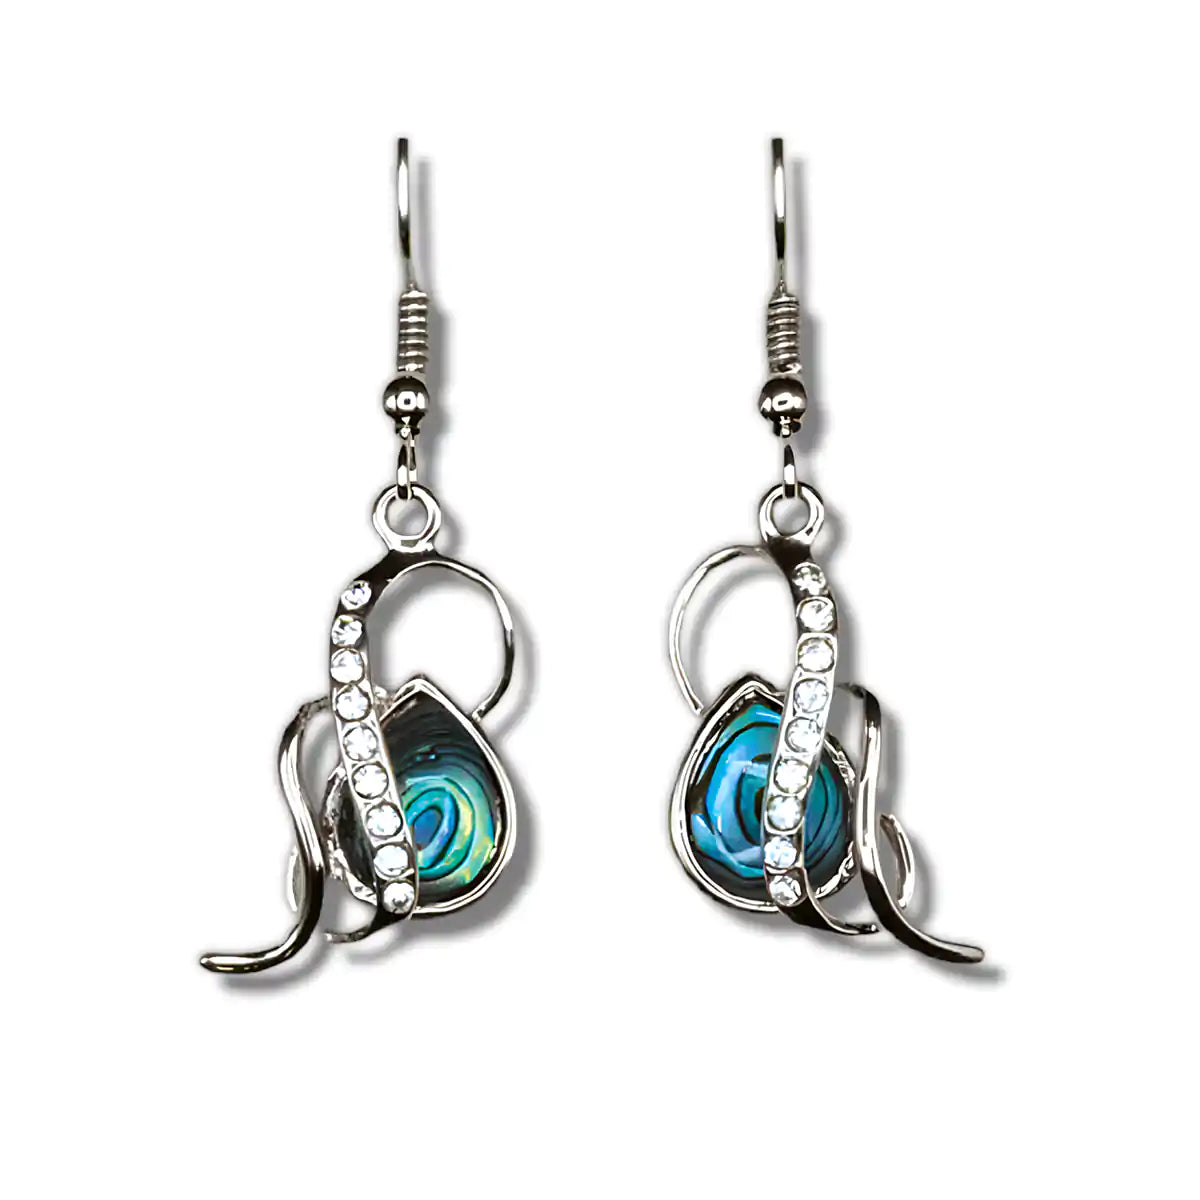 Glacier pearle embrace earrings